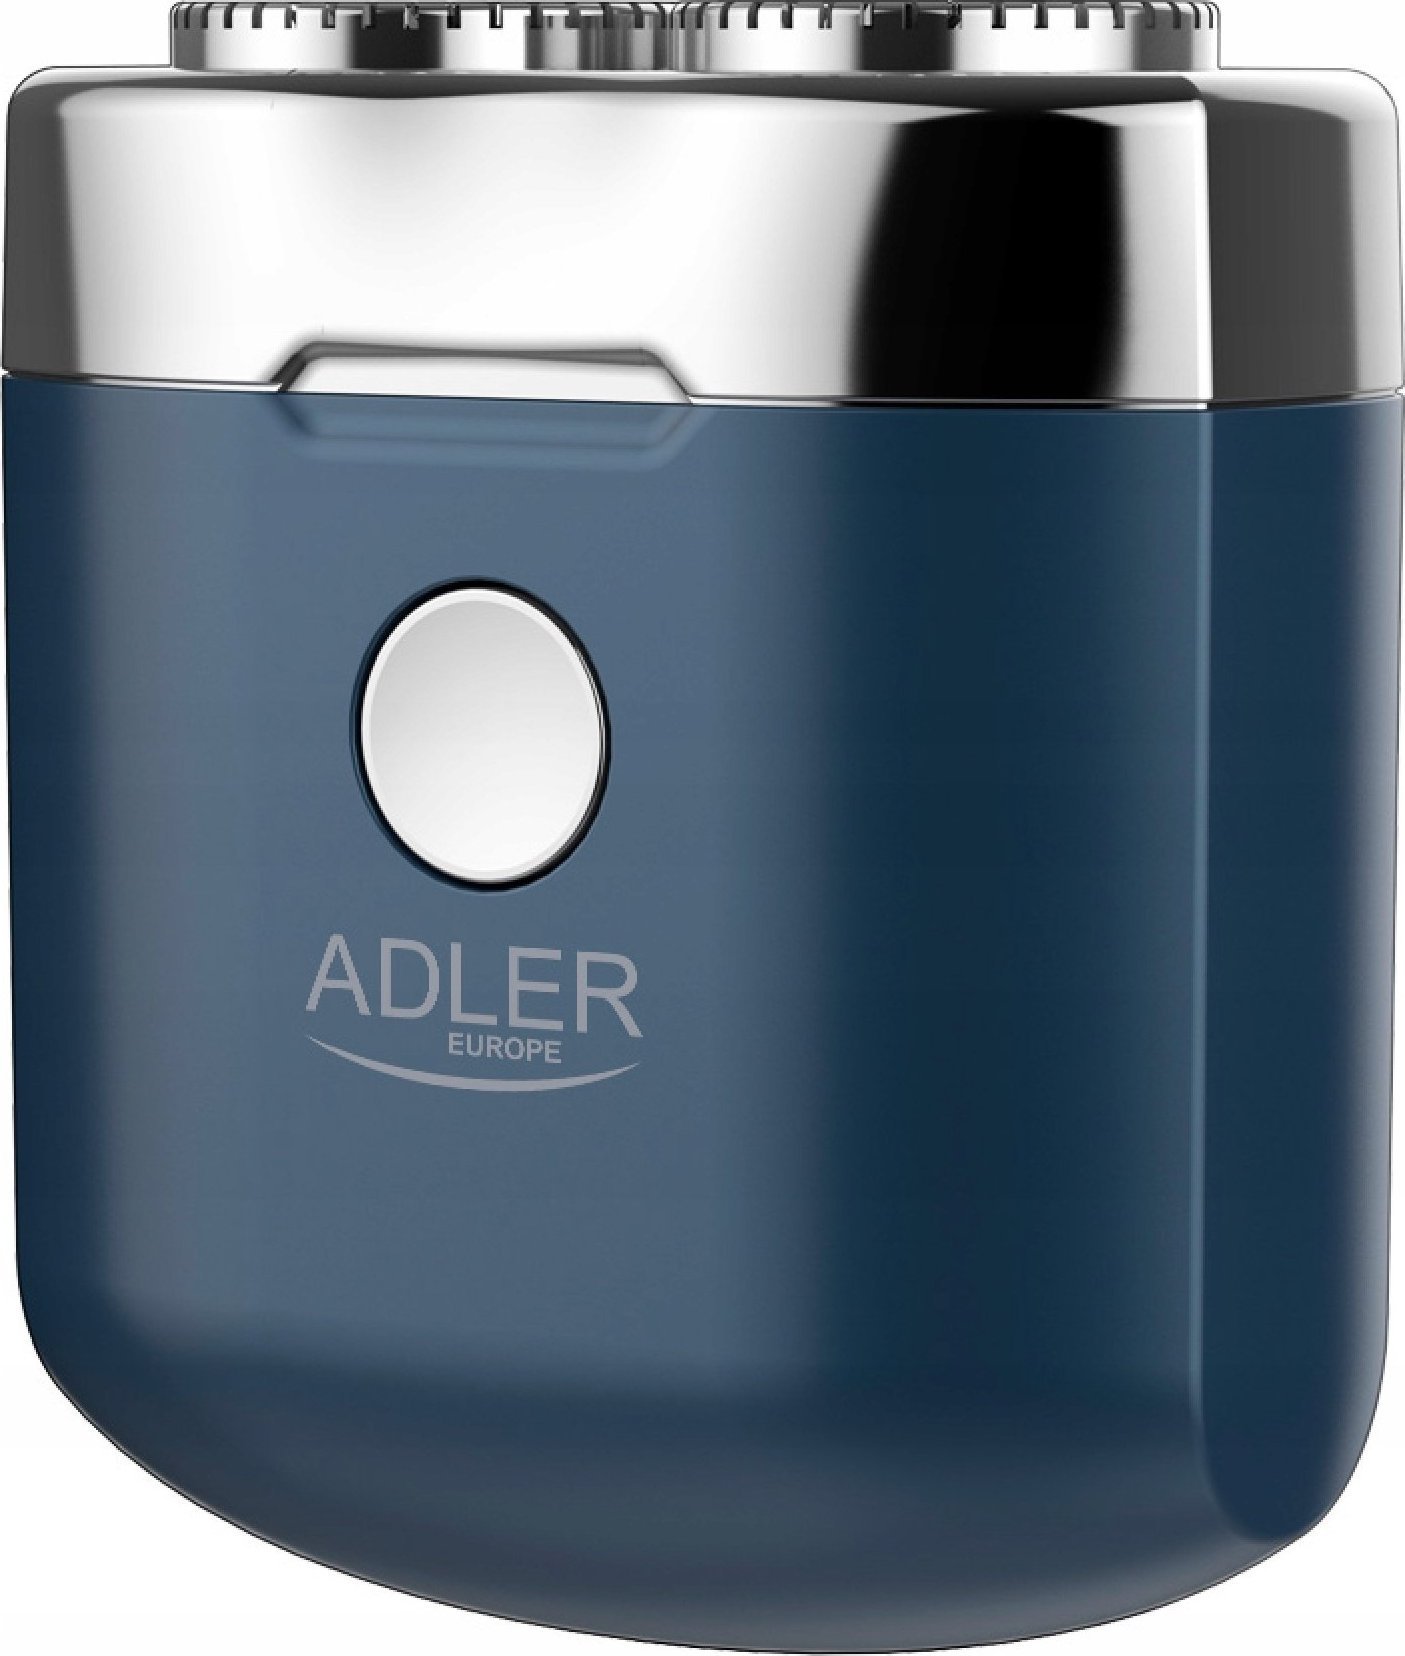 Aparate de ras electrice - Stergator mini Adler AD 2937, 250 mAh, USB C, Pentru calatorie, Wireless, Albastru/Inox